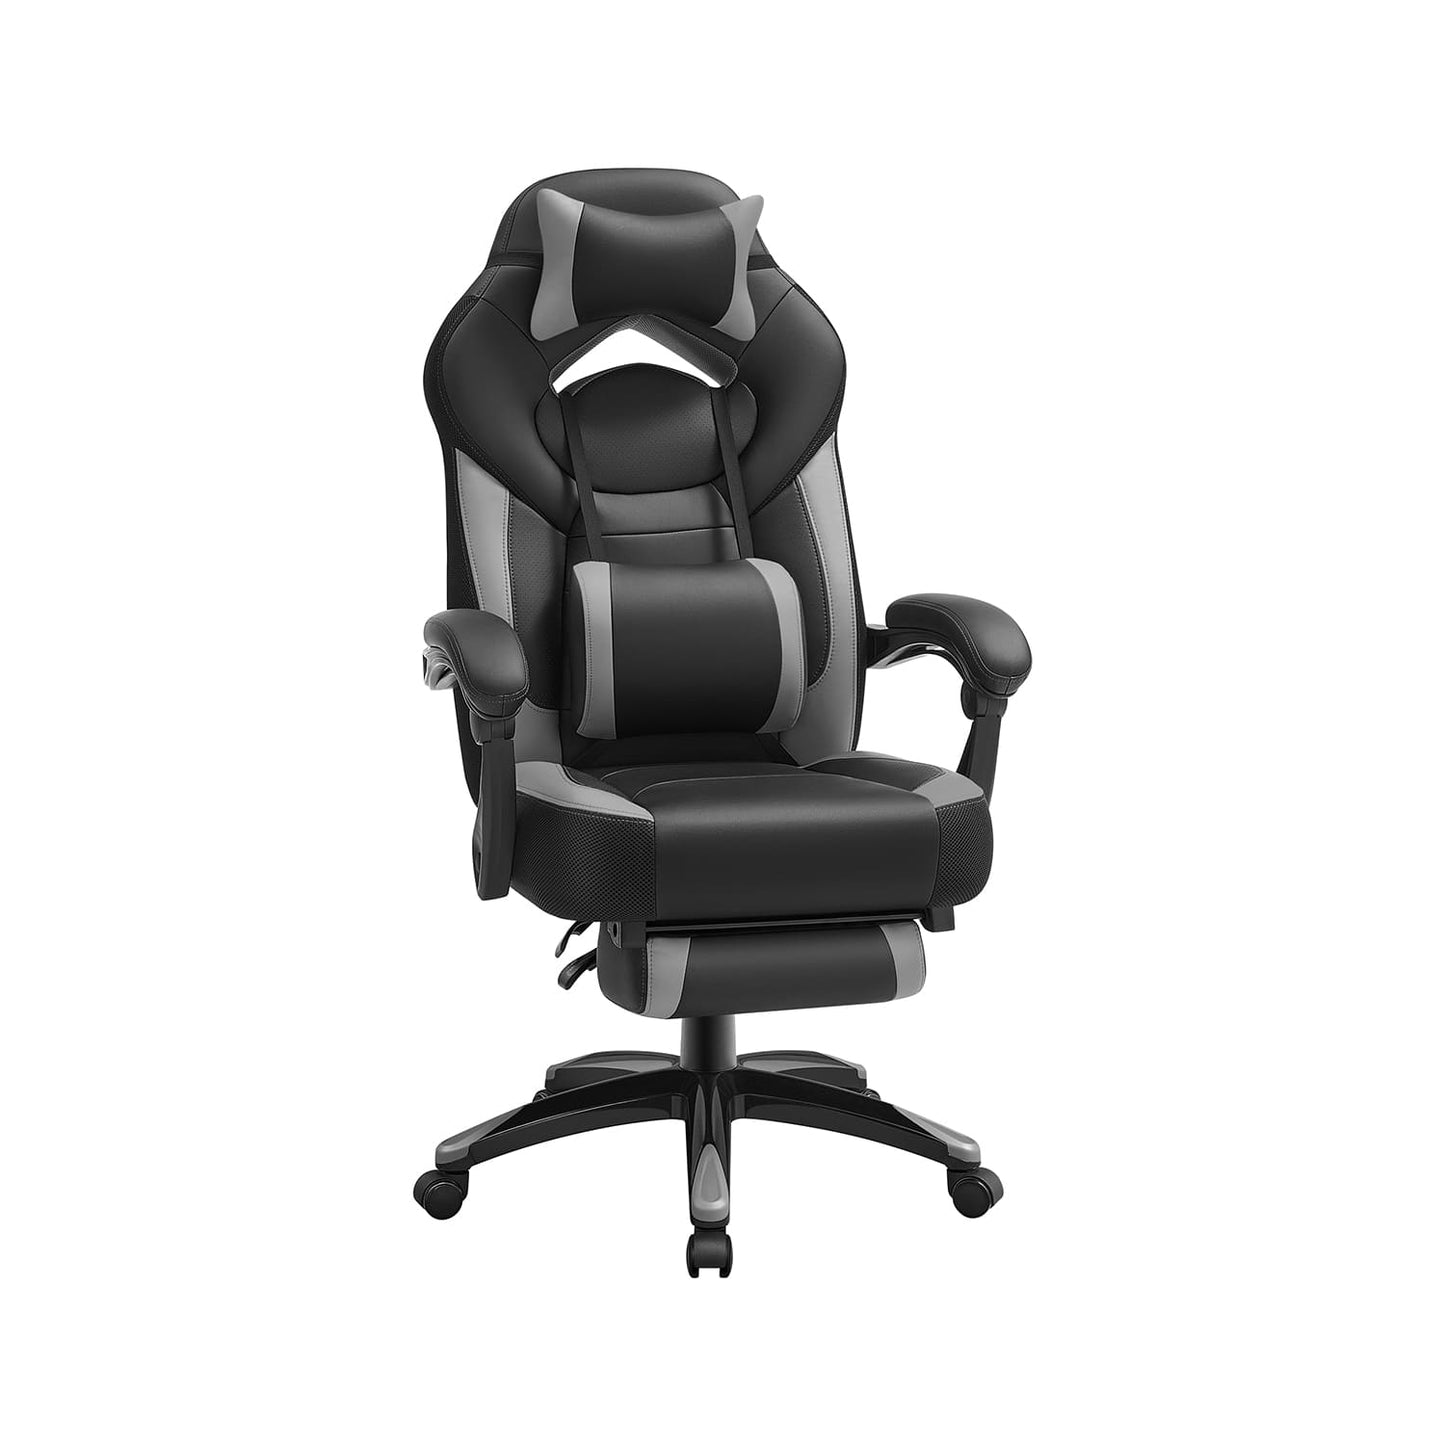 Silla gaming Comprar, silla de oficina, piel sintética. Cuerpo duradero, 150 kg, silla de ruedas, SONGMICS